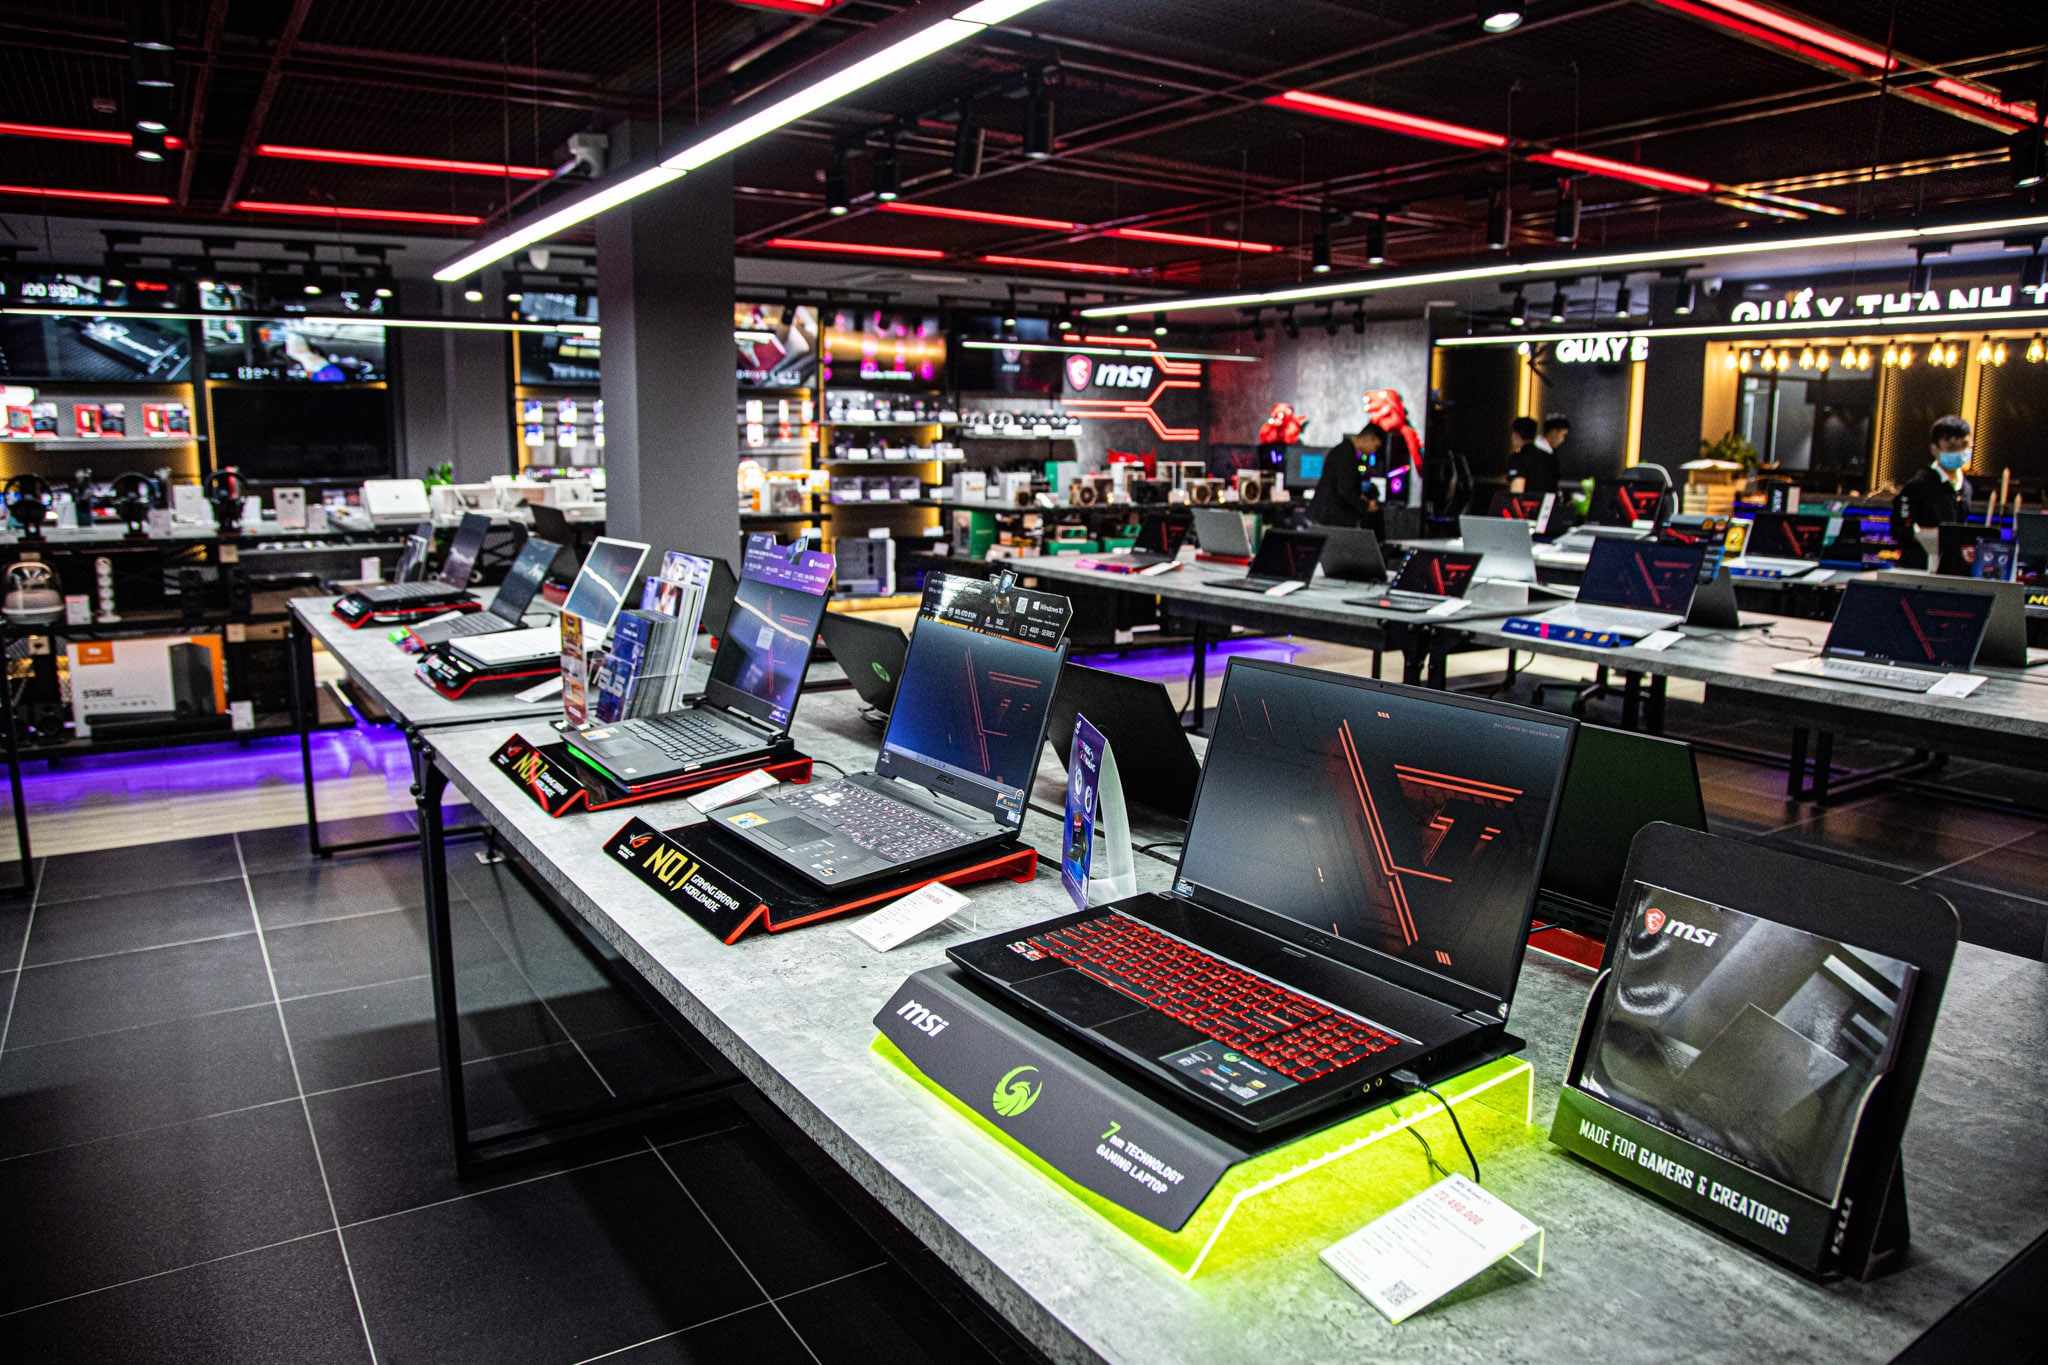 GearVN khai trương showroom Hi-end PC và gaming gear ngay tại trung tâm thành phố Hồ Chí Minh